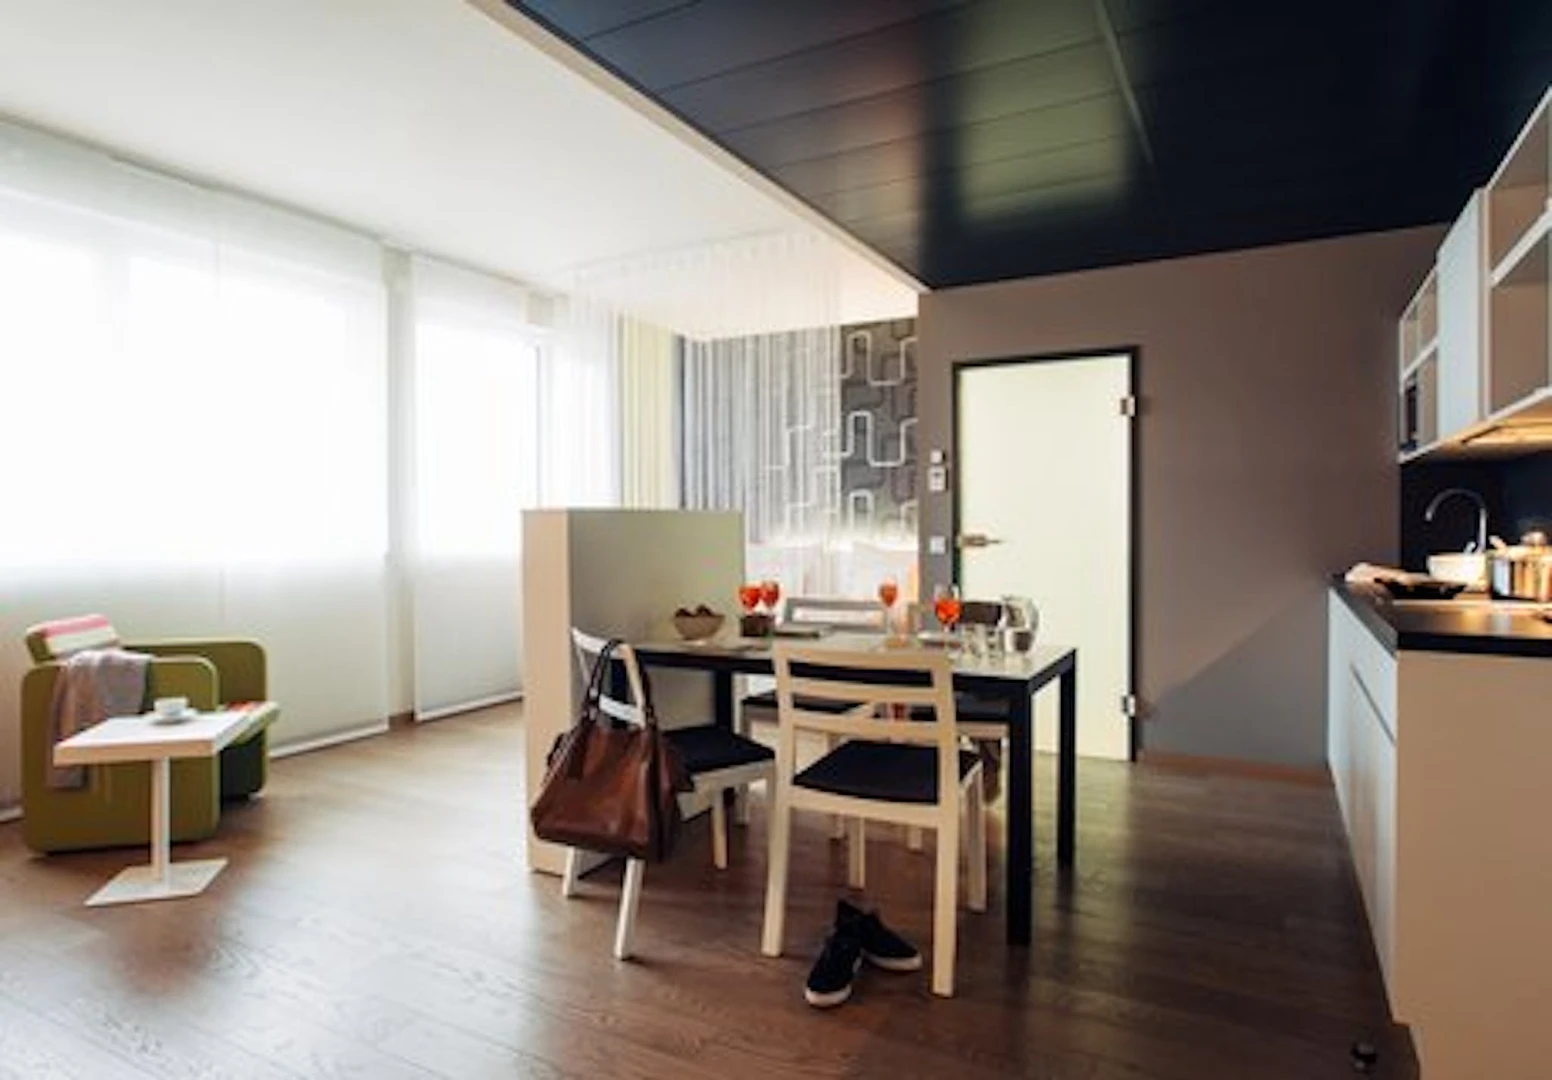 Apartamento moderno y luminoso en Linz